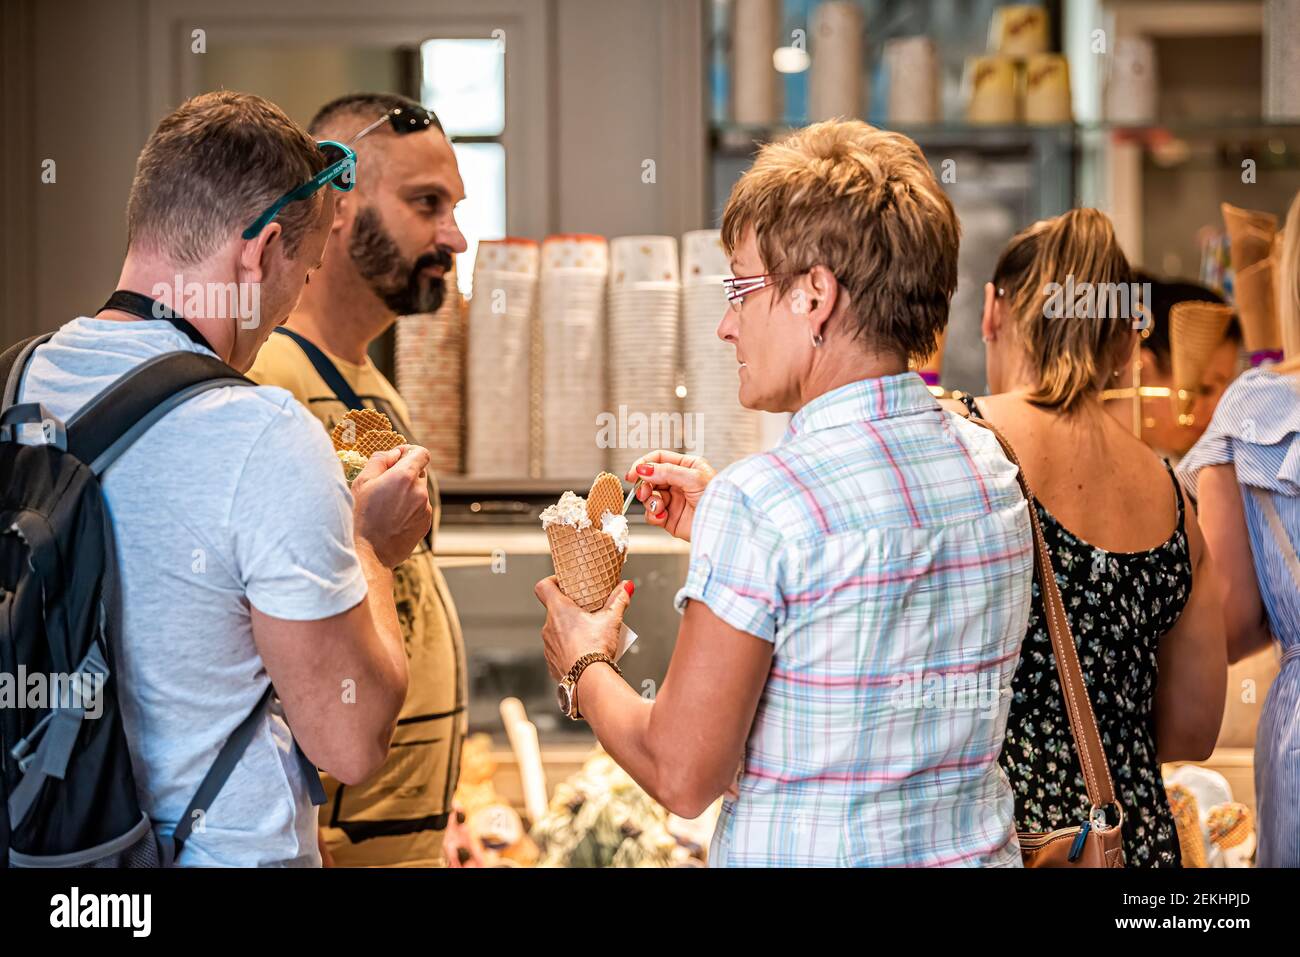 Siena, Italia - 27 agosto 2018: Due candidi che mangiano coni gelato con cucchiai in via italiana nel villaggio storico della Toscana uomo donna Foto Stock